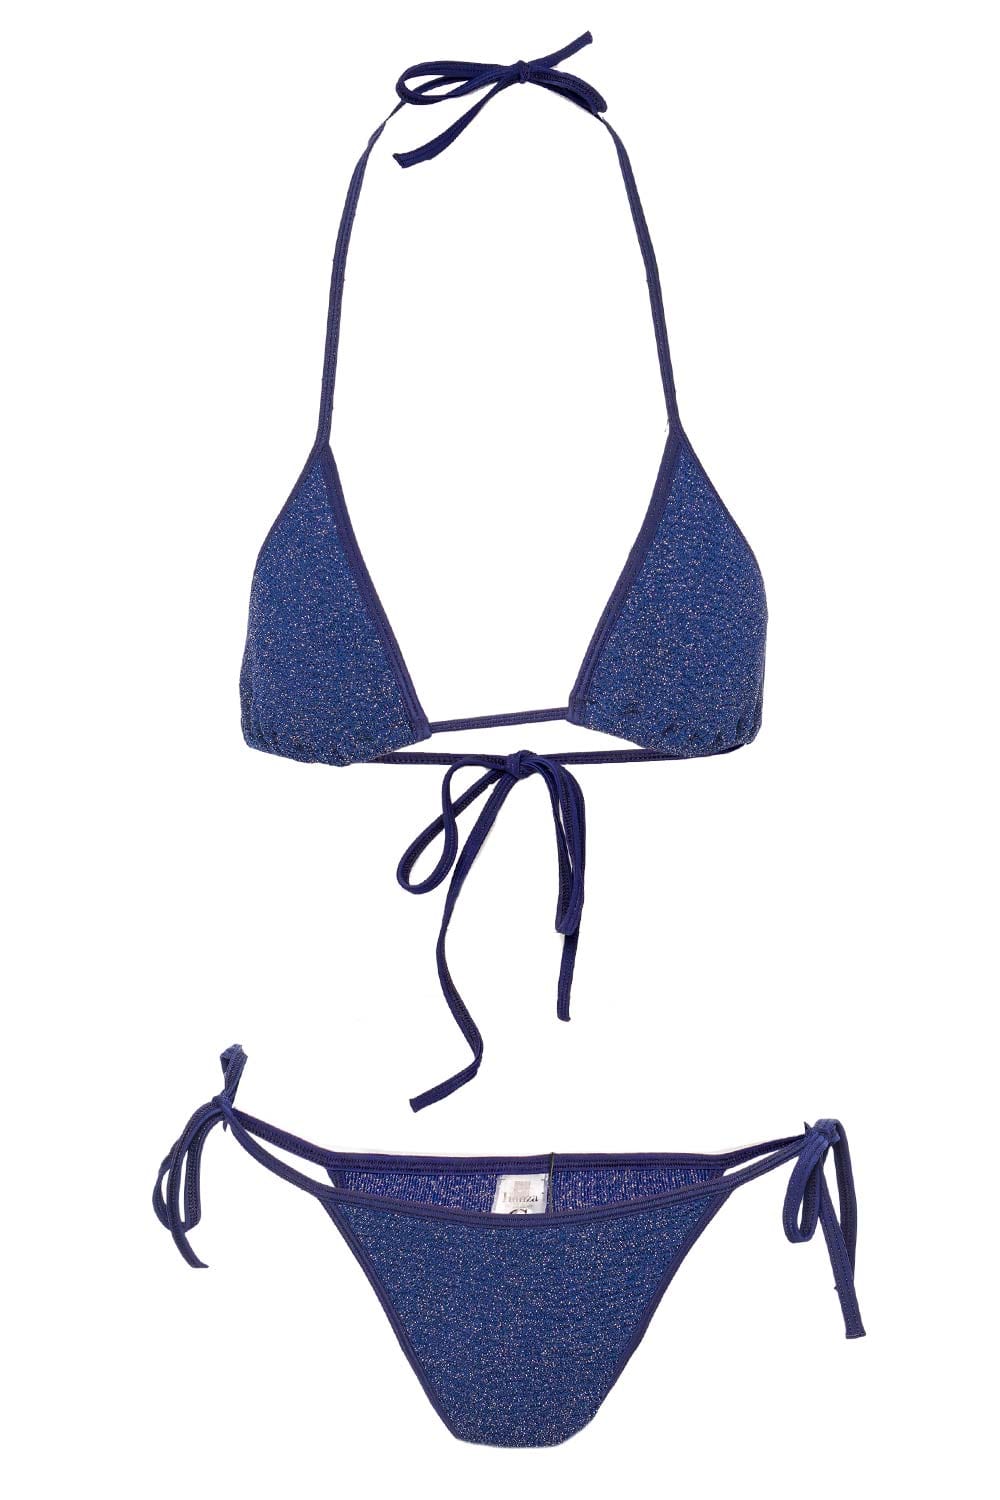 Hunza G Gina Navy Shimmer Triangle Bikini Set